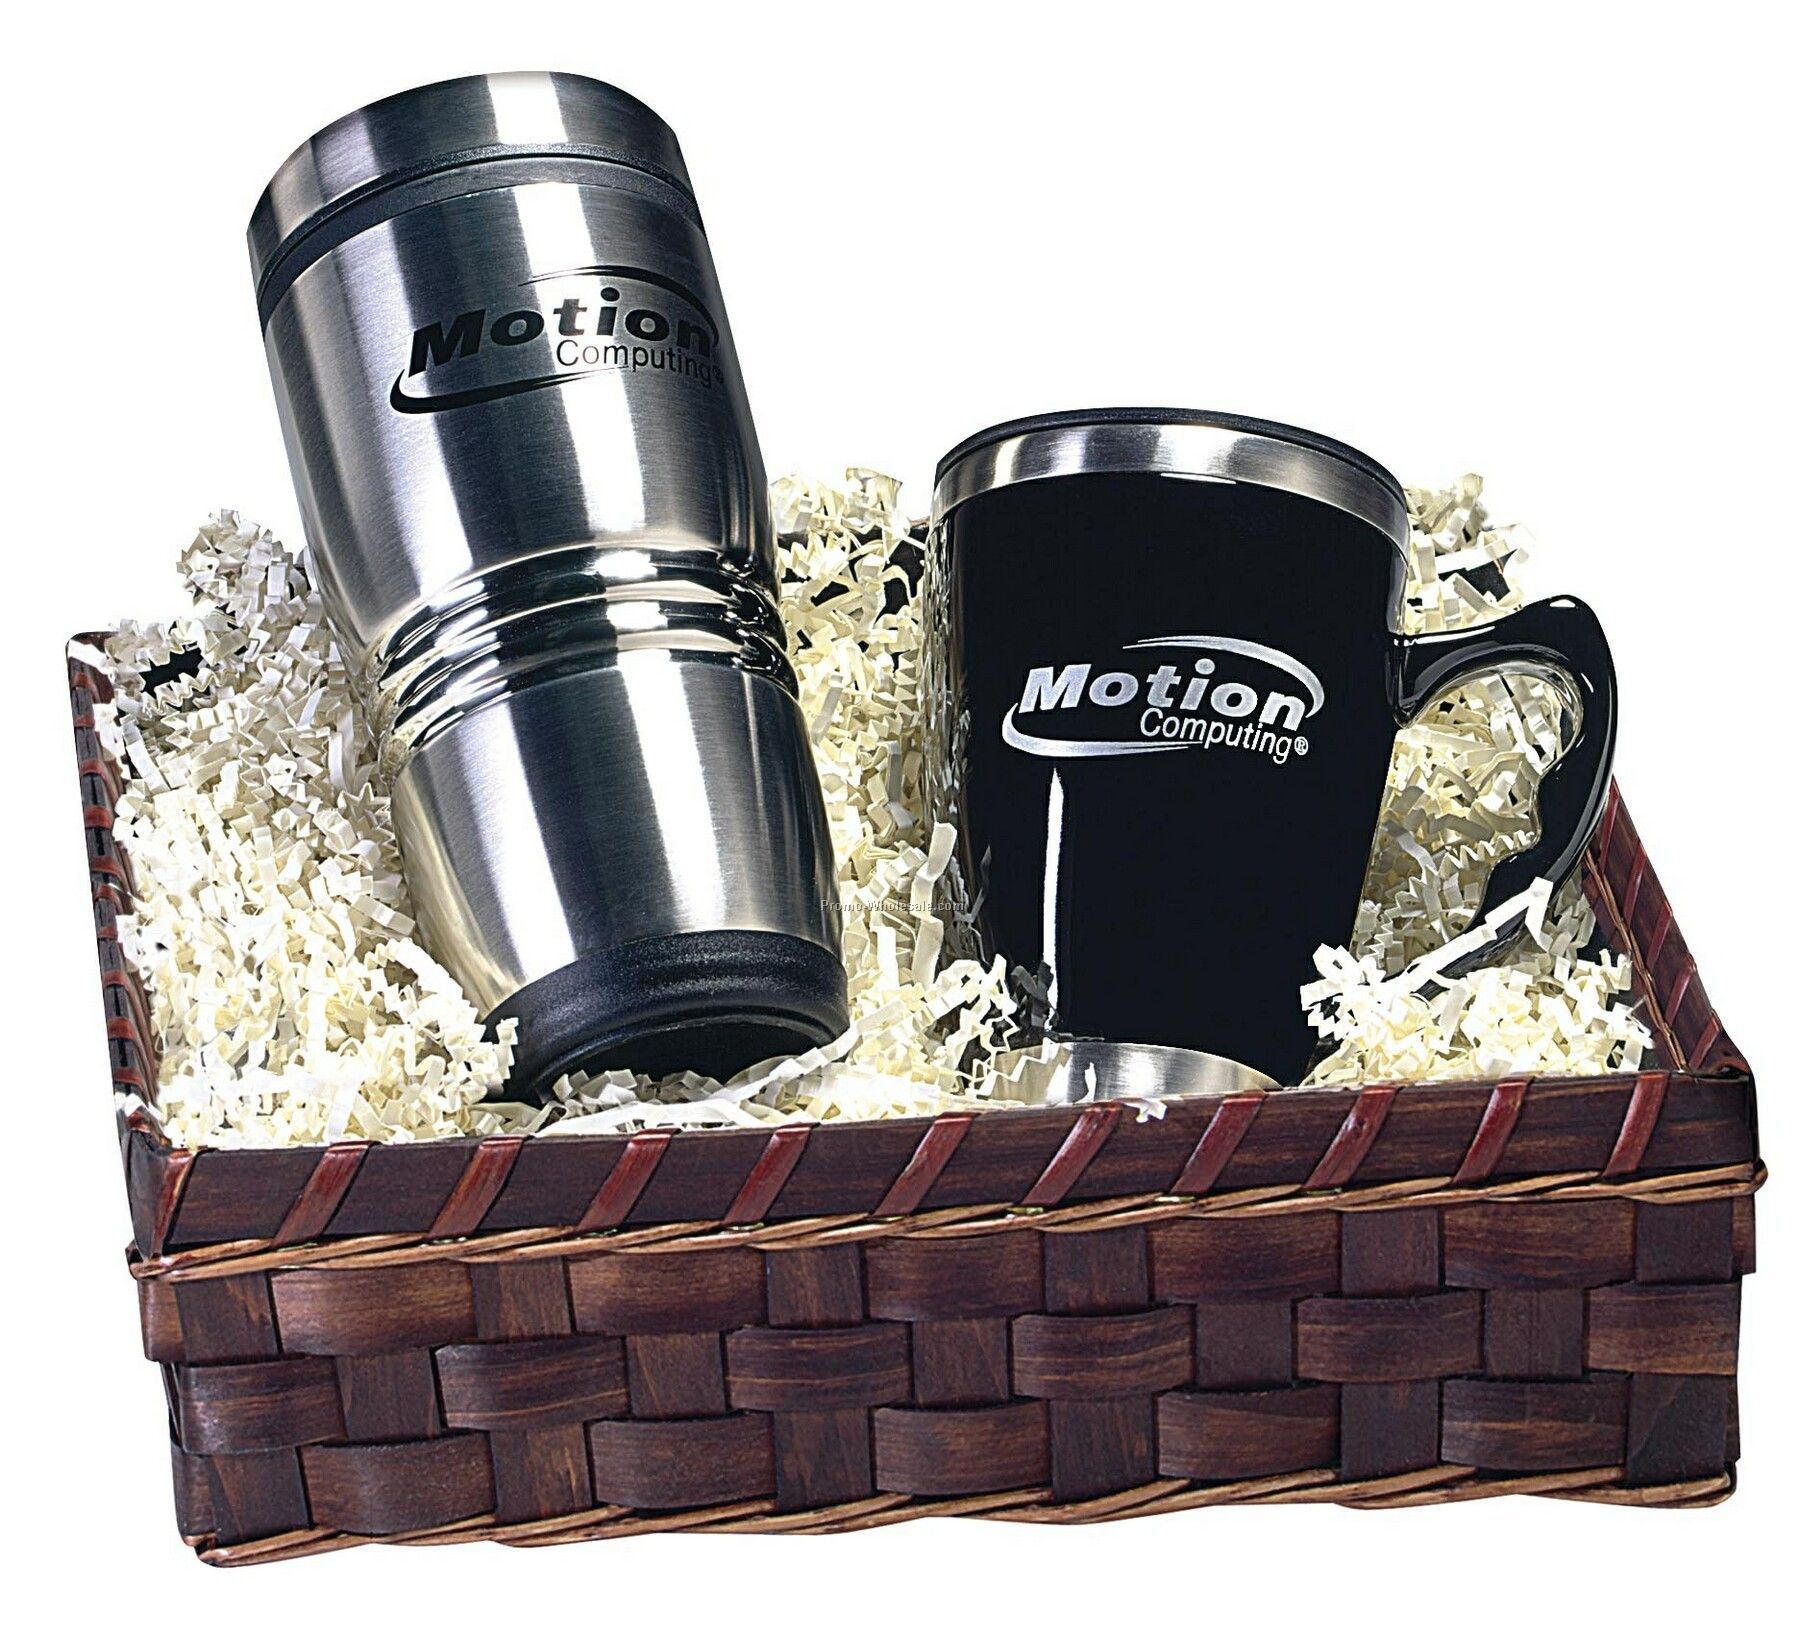 Rcc Koozie 2 Piece Tumbler & Mug Gift Set - Gift Basket